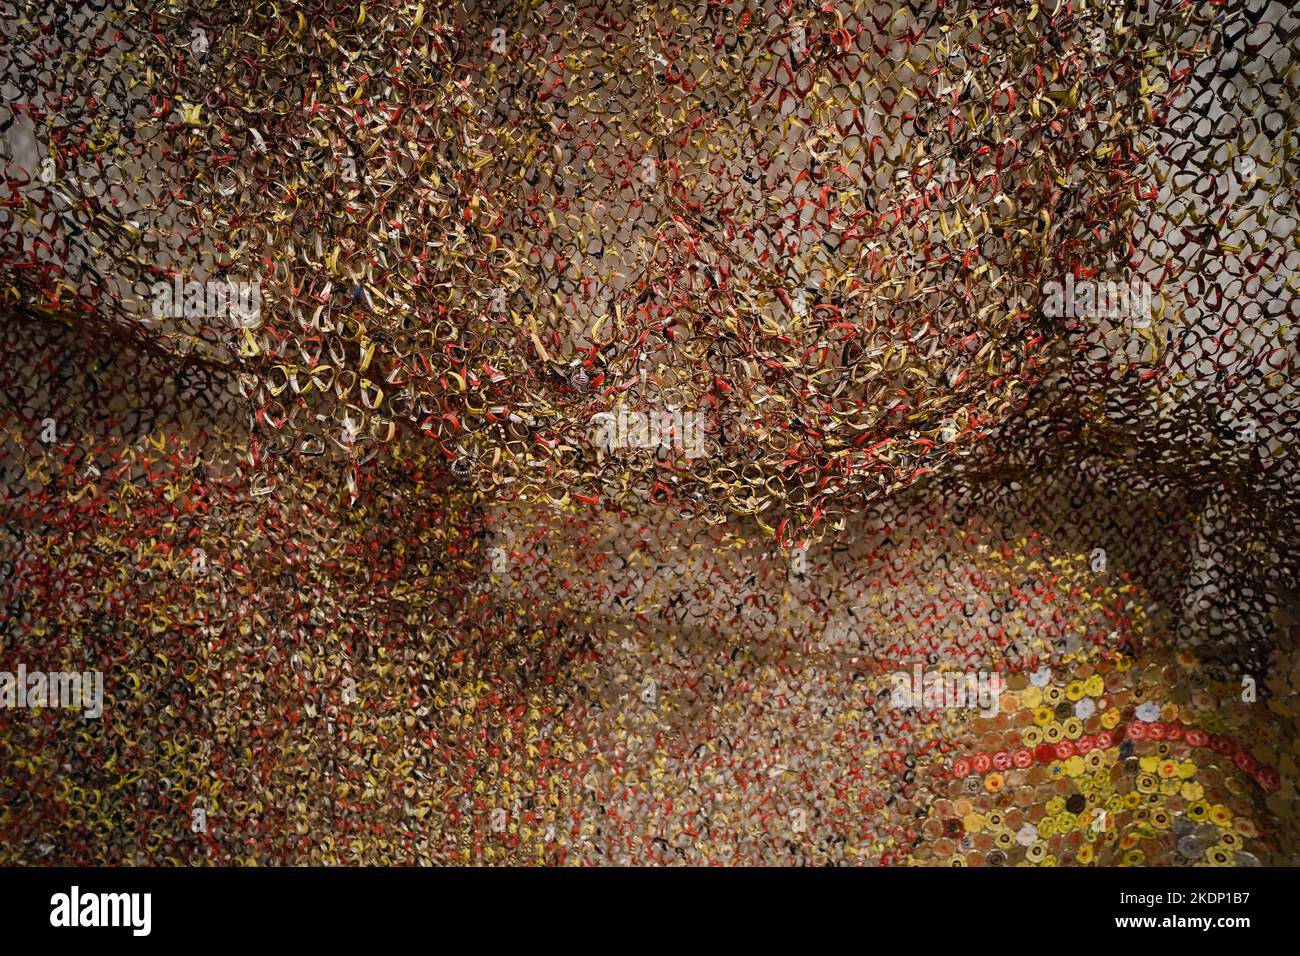 Grande tapisserie en métal faite avec des hauts de bouteille de liqueur jetés par l'artiste africain El Anatsui. Les dessus de bouteille sont des marchandises d'importation et ont un fort hist africain Banque D'Images